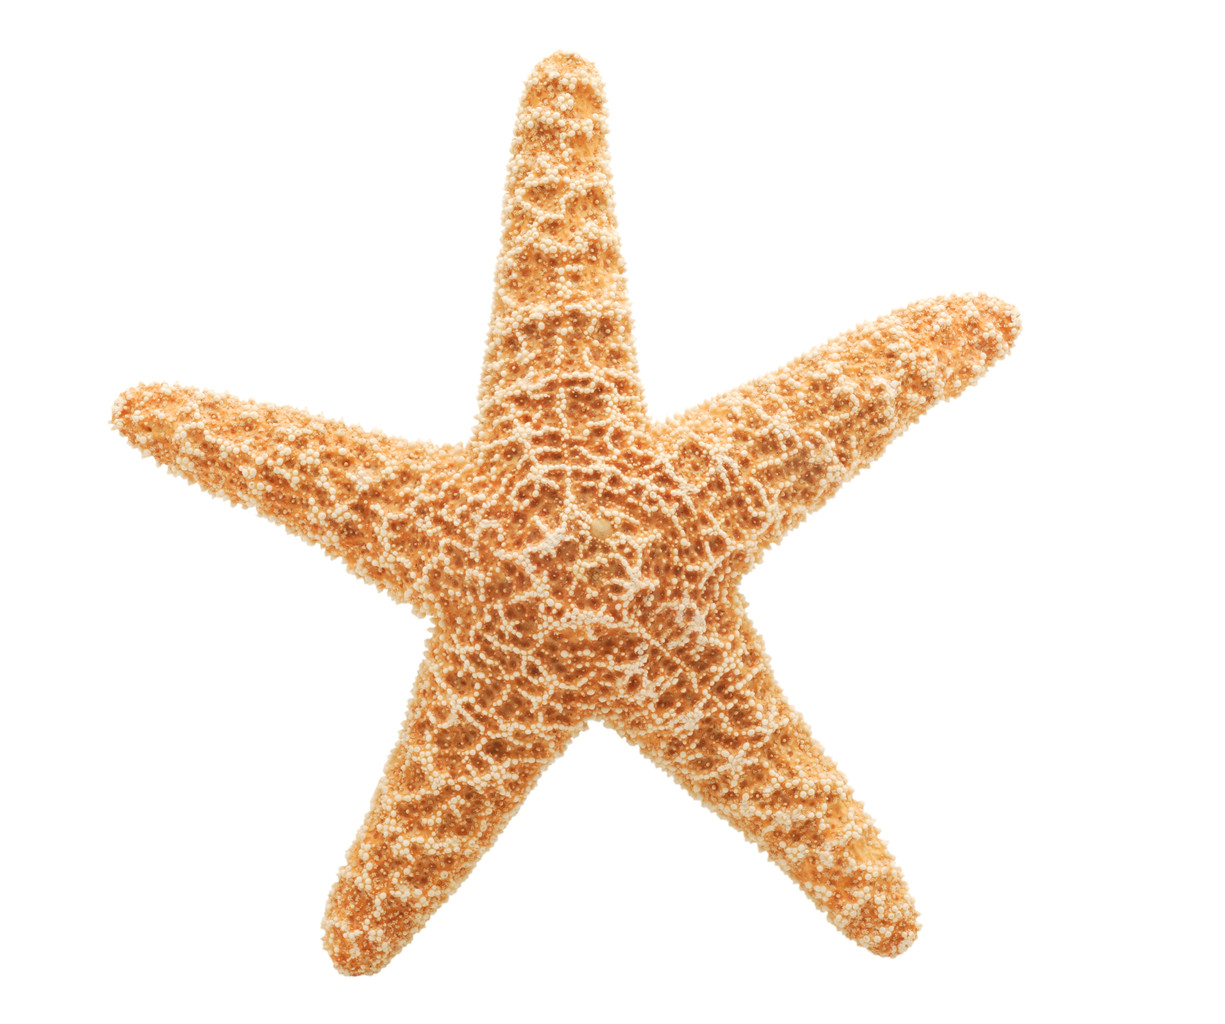 PNG File Name: Cute Starfish 